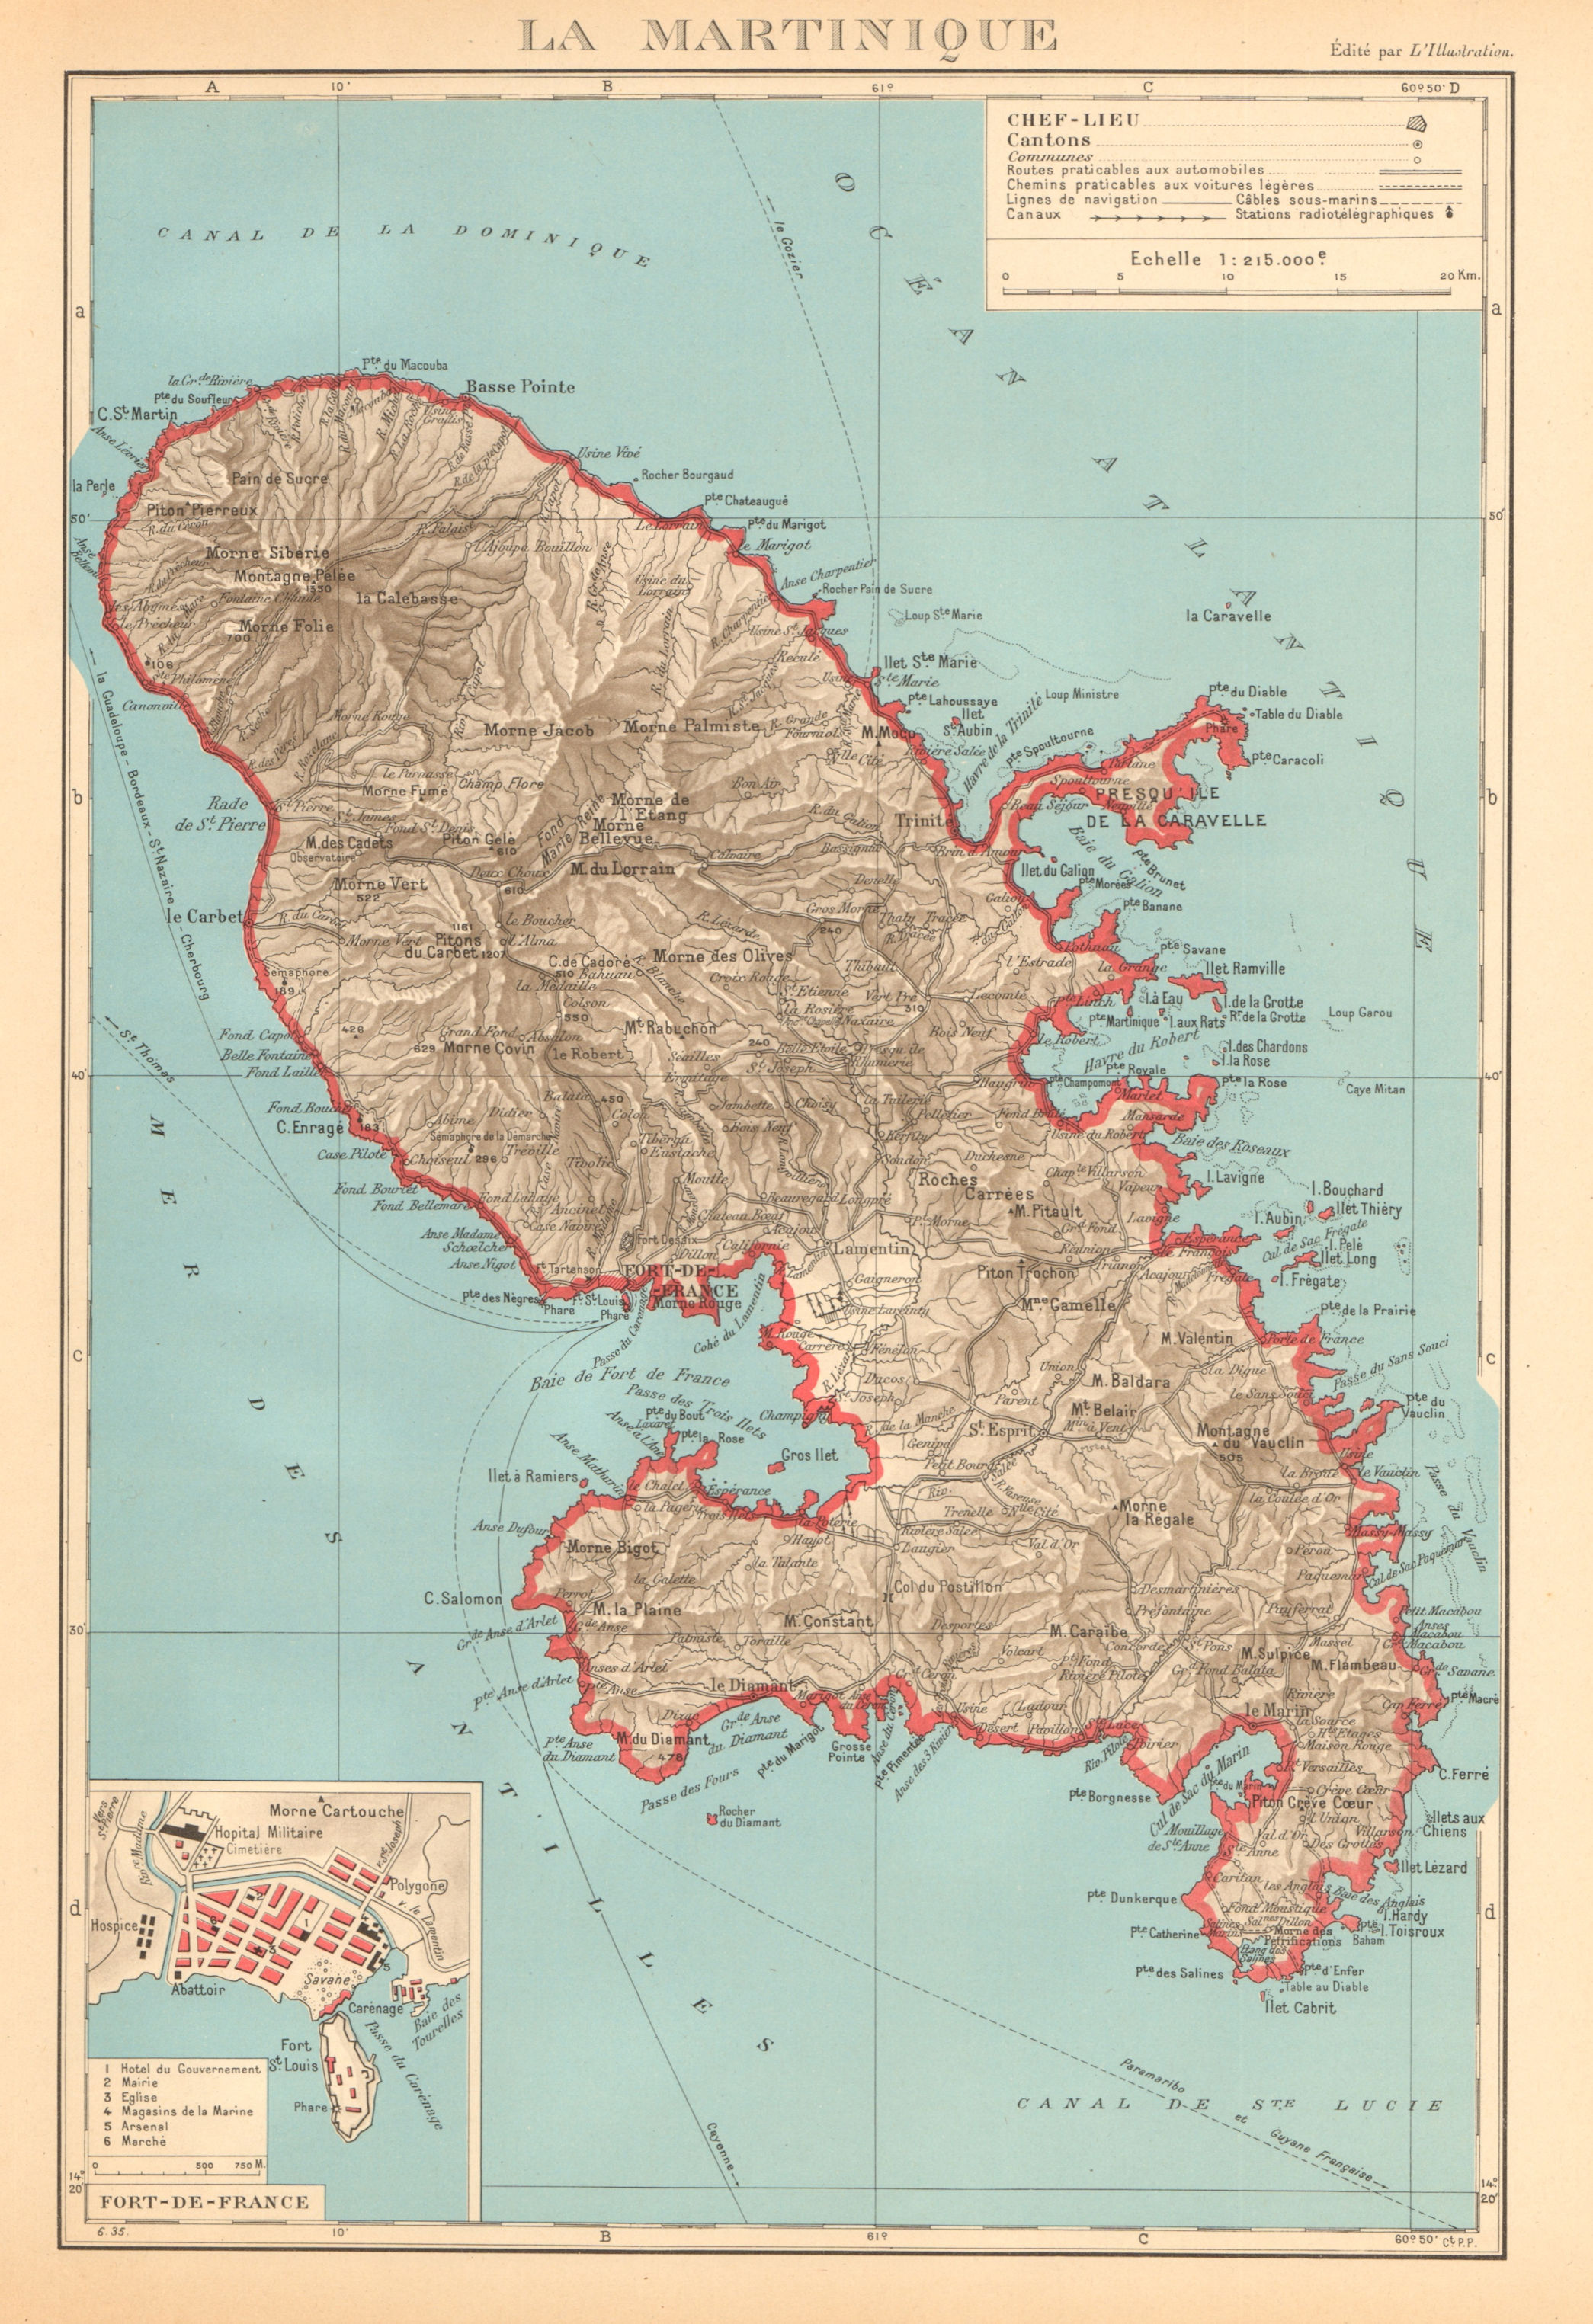 MARTINIQUE. Fort-de-France plan. Antilles françaises French West Indies 1938 map